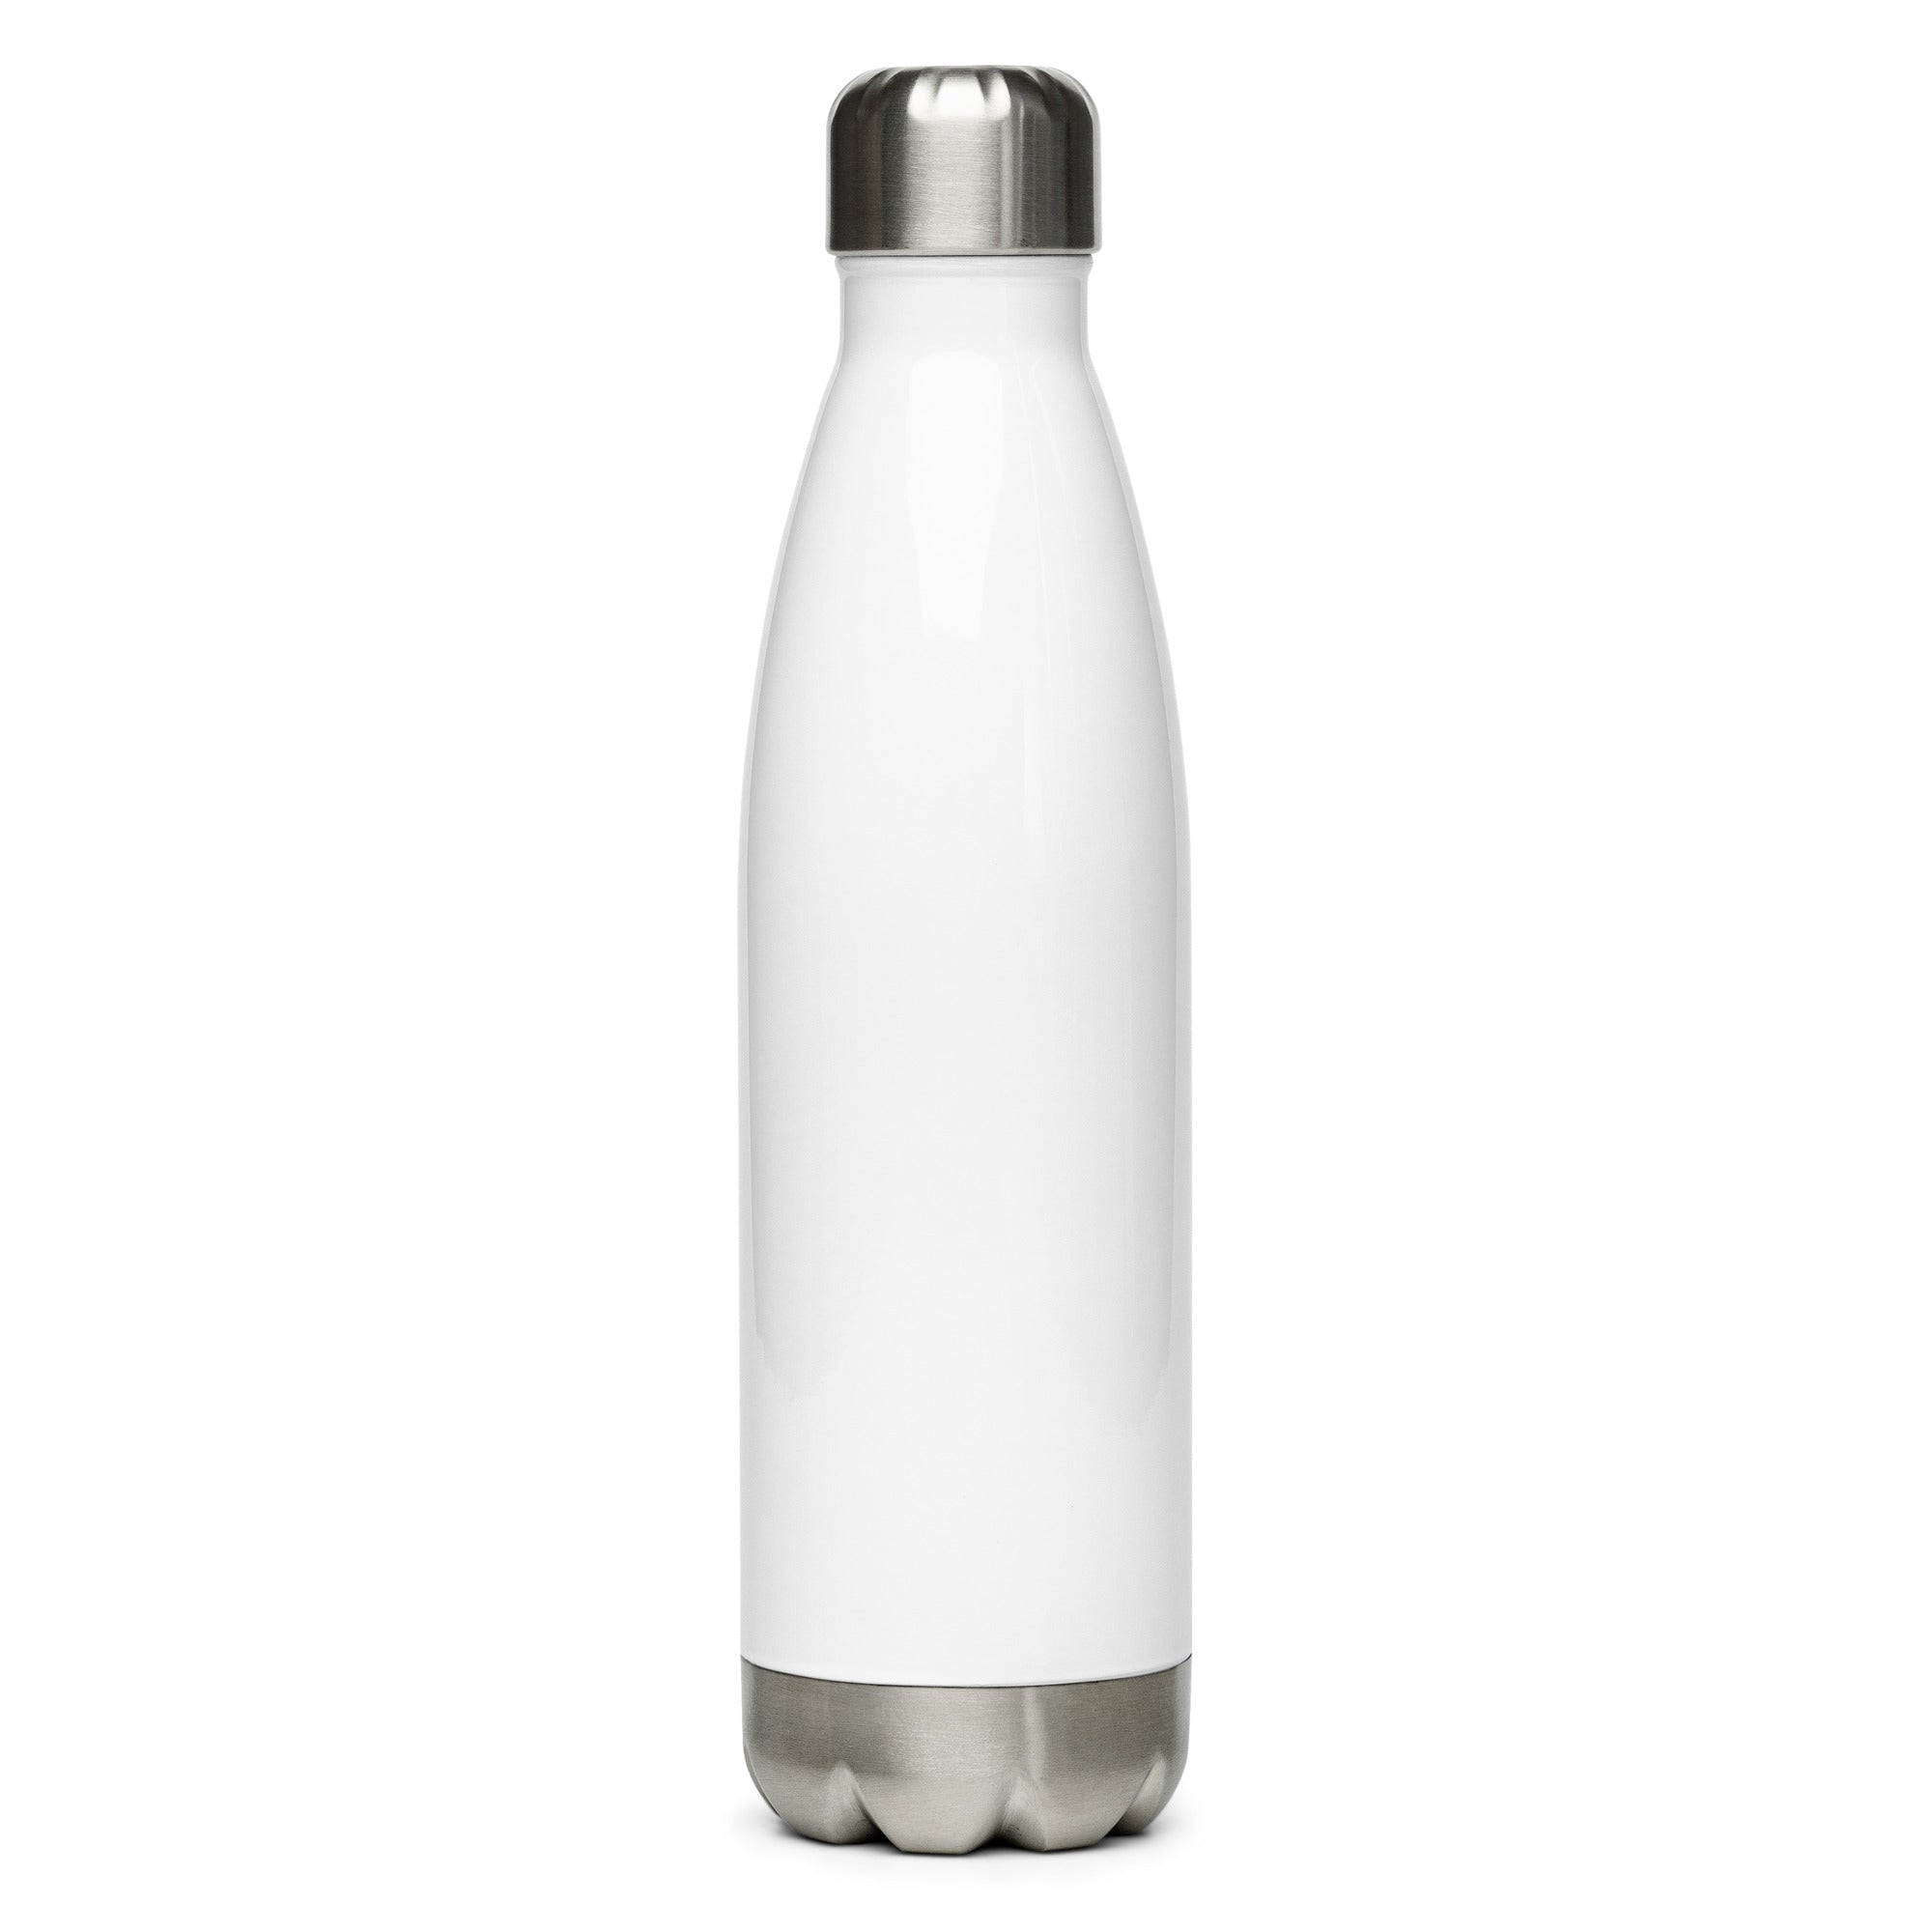 Stainless steel water bottle - Matthew 6:21